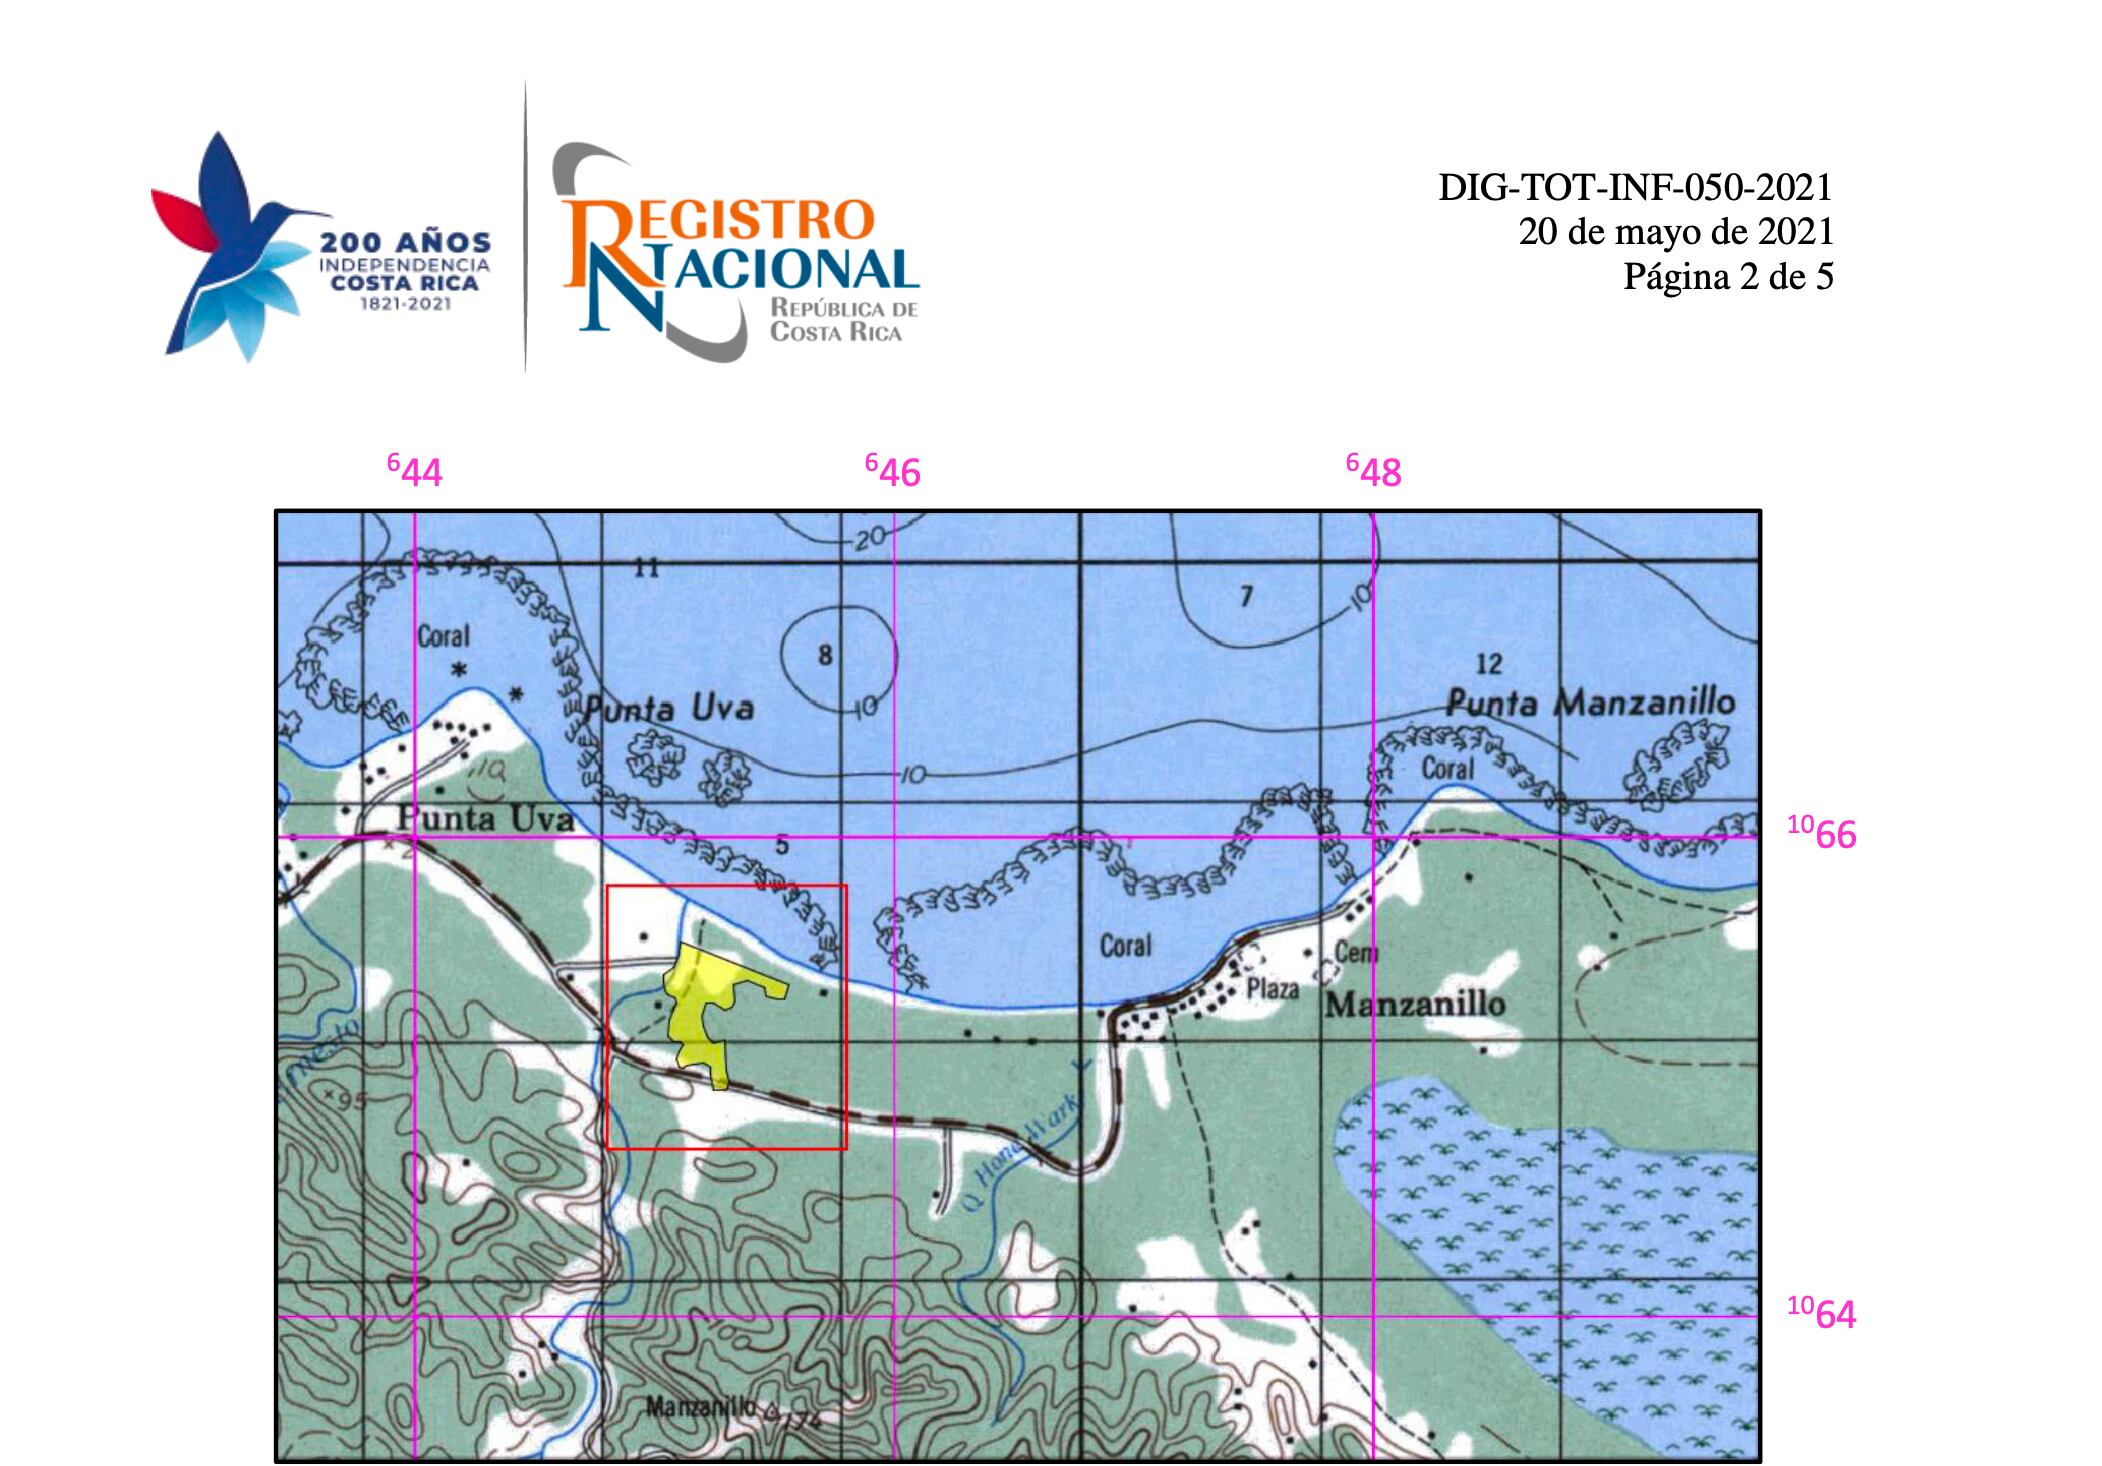 Parte del oficio DIG-TOT-0232-2021 del Registro Nacional emitido el 20 de mayo, donde aparece en amarillo la propiedad de Playa Manzanillo S. A. Fotografía: oficio DIG-TOT-0232-2021